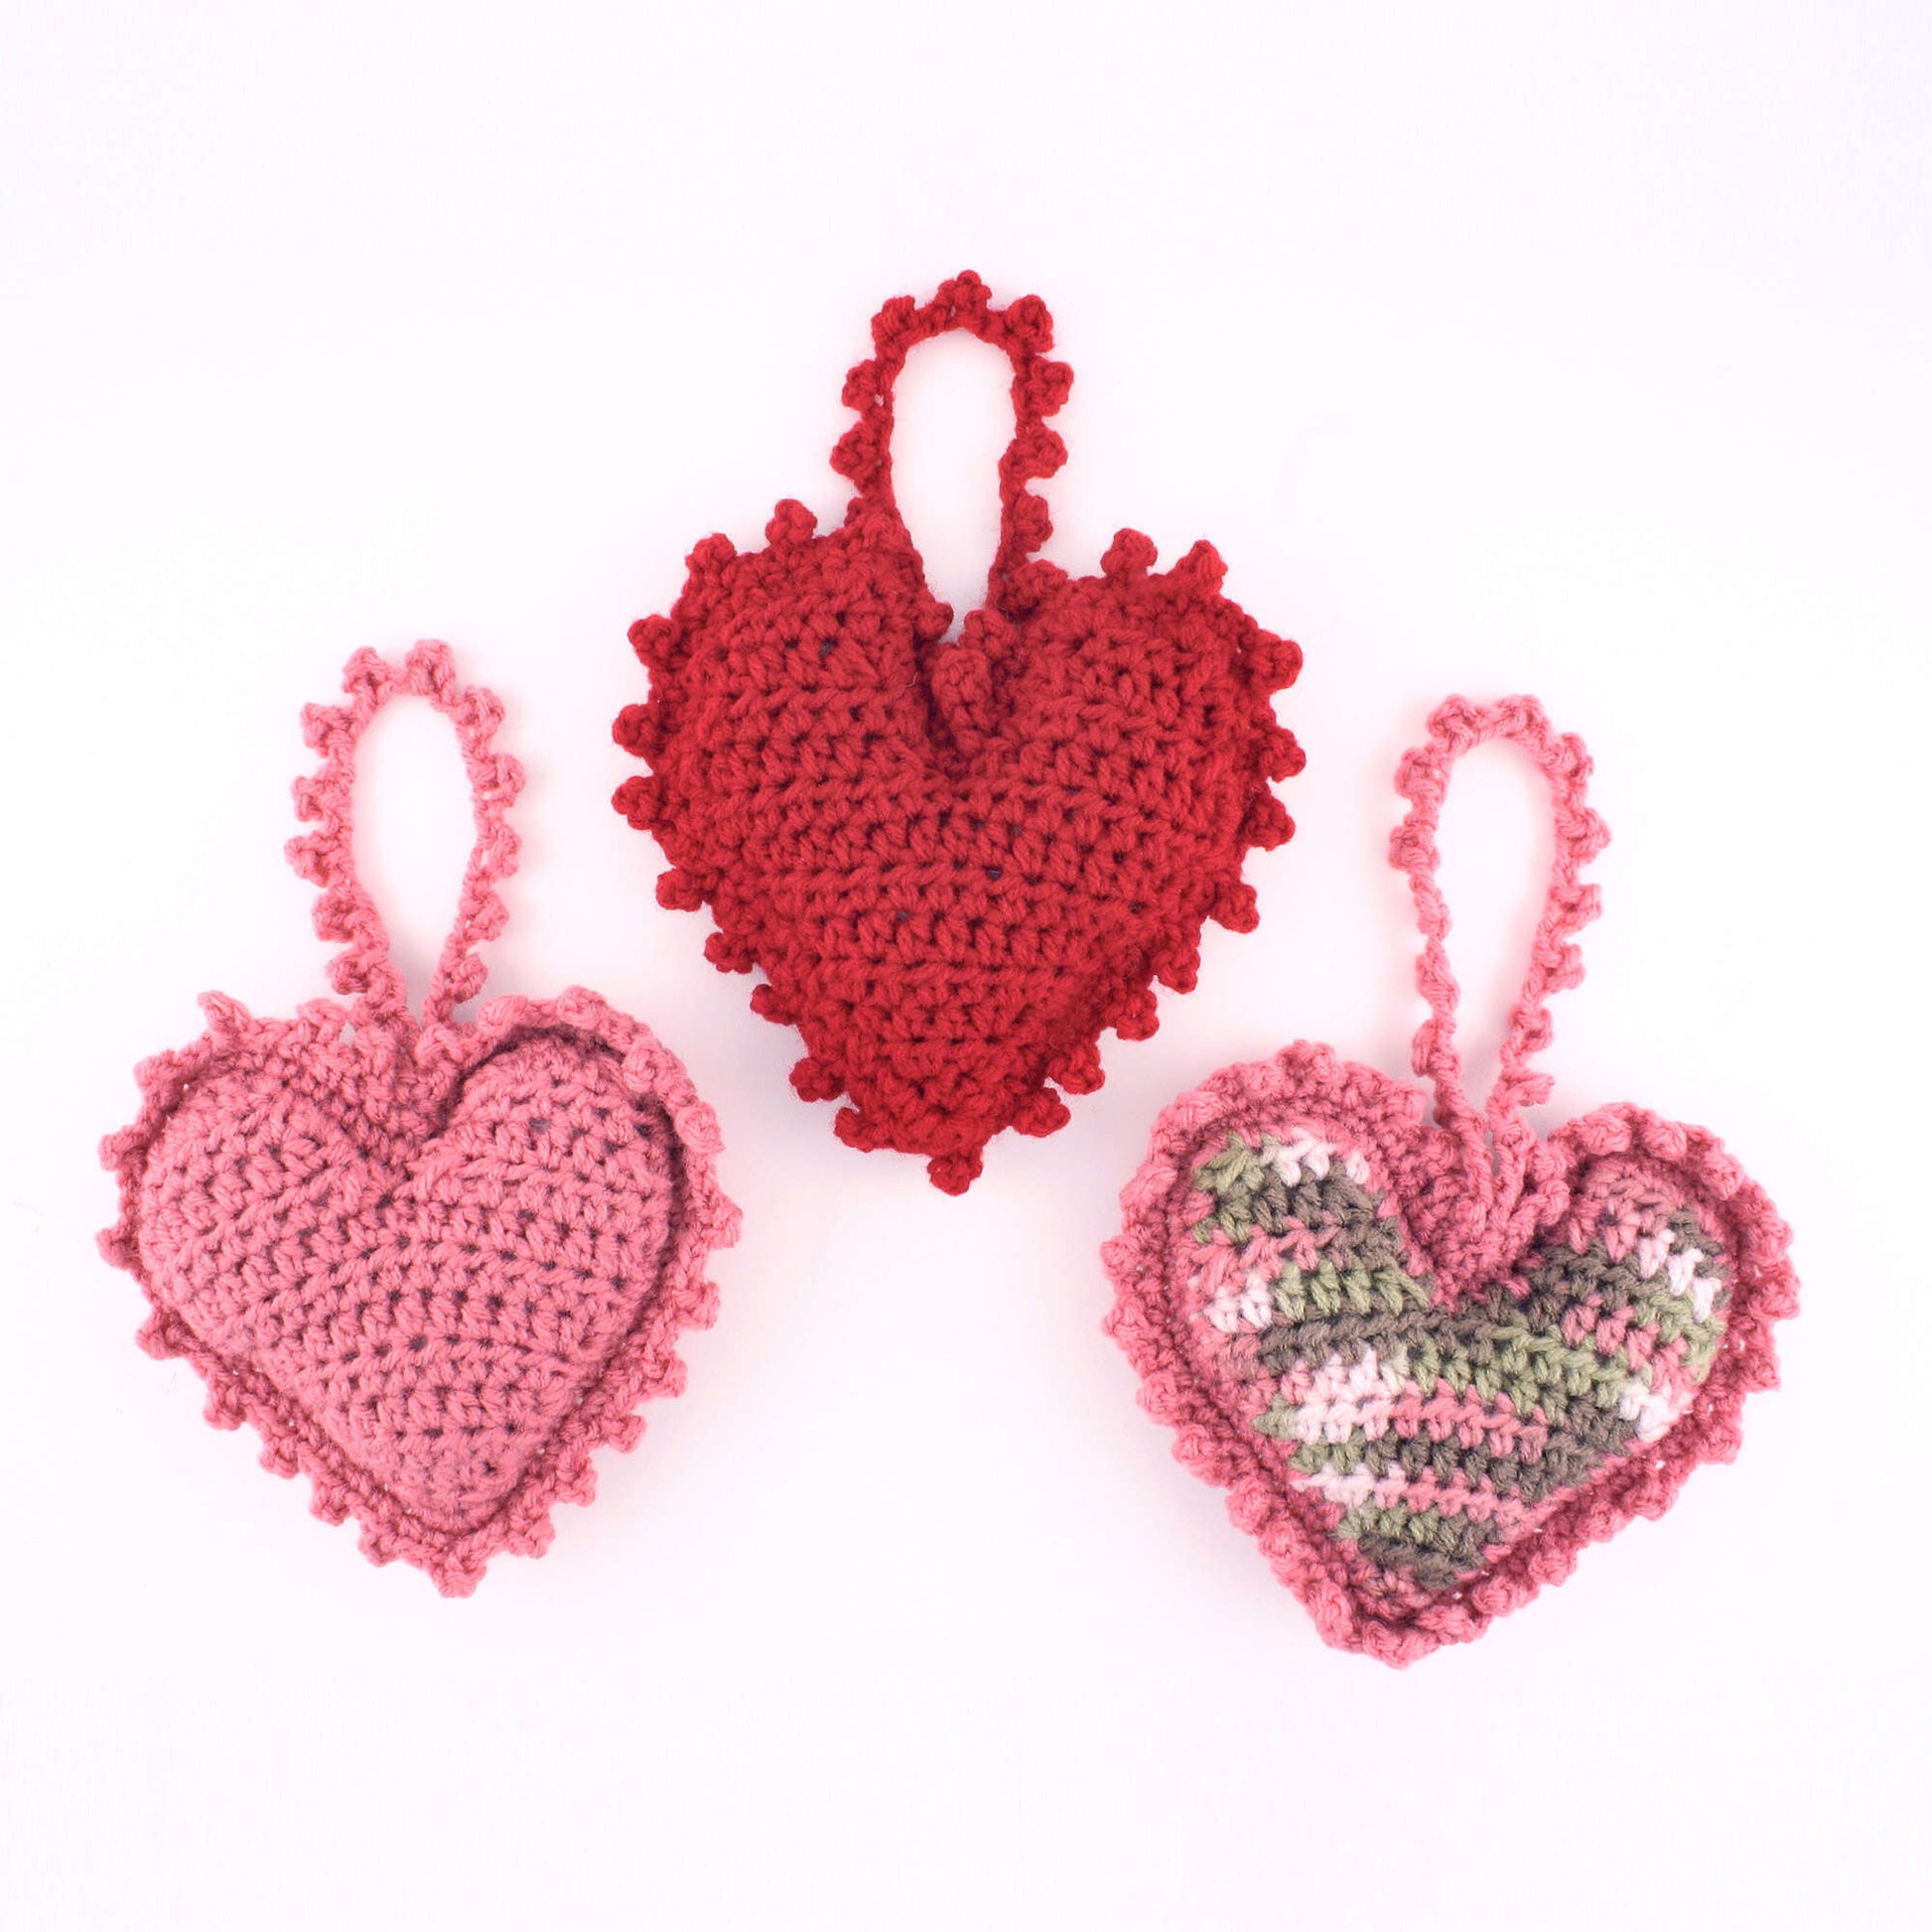 Free Red Heart Crochet Sweet Heart Sachet Pattern